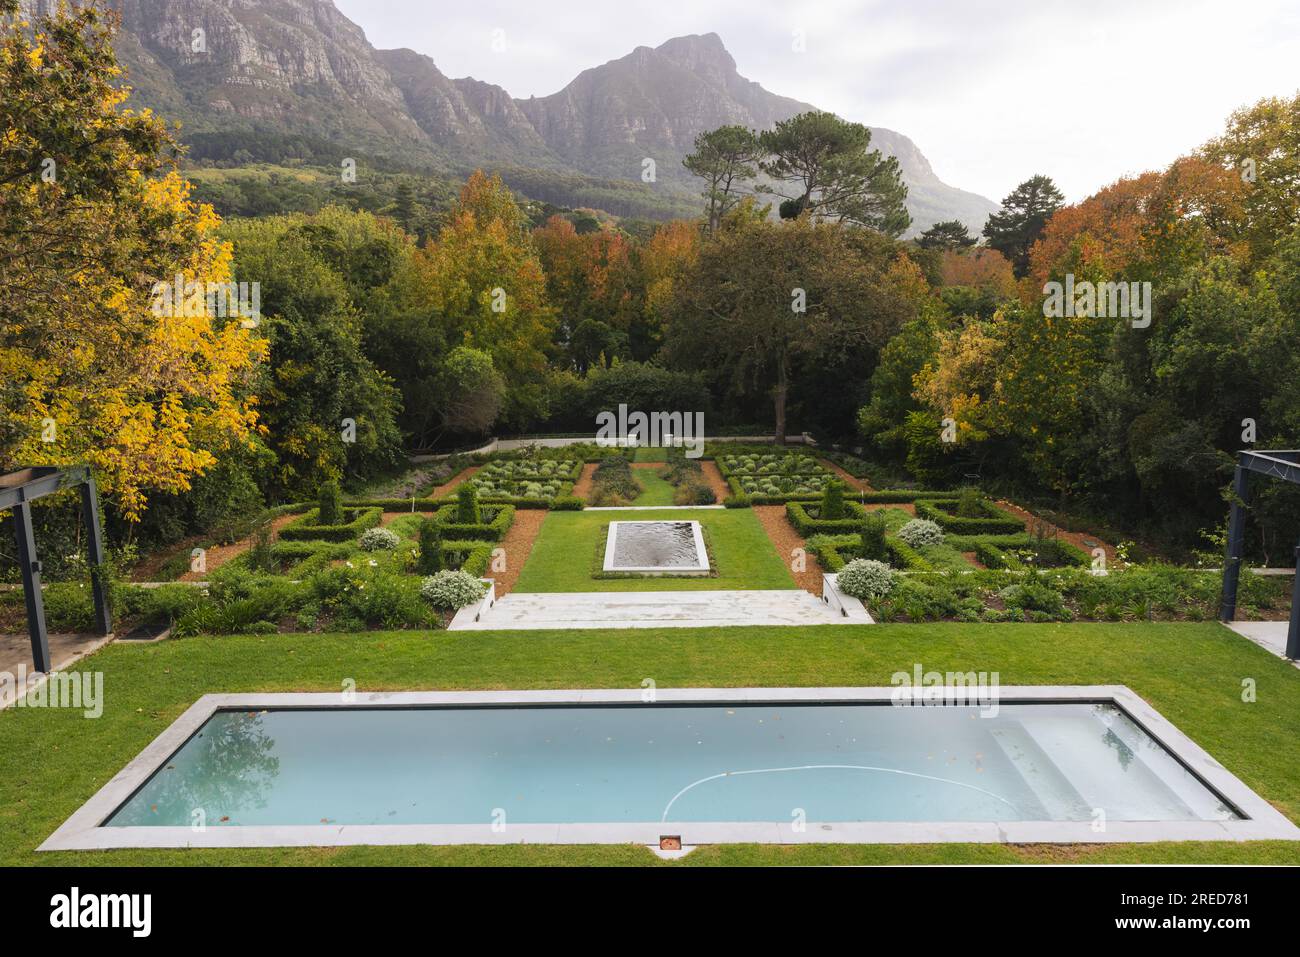 Vista general del hermoso jardín casero con piscina y árboles cerca del paisaje de las montañas Foto de stock